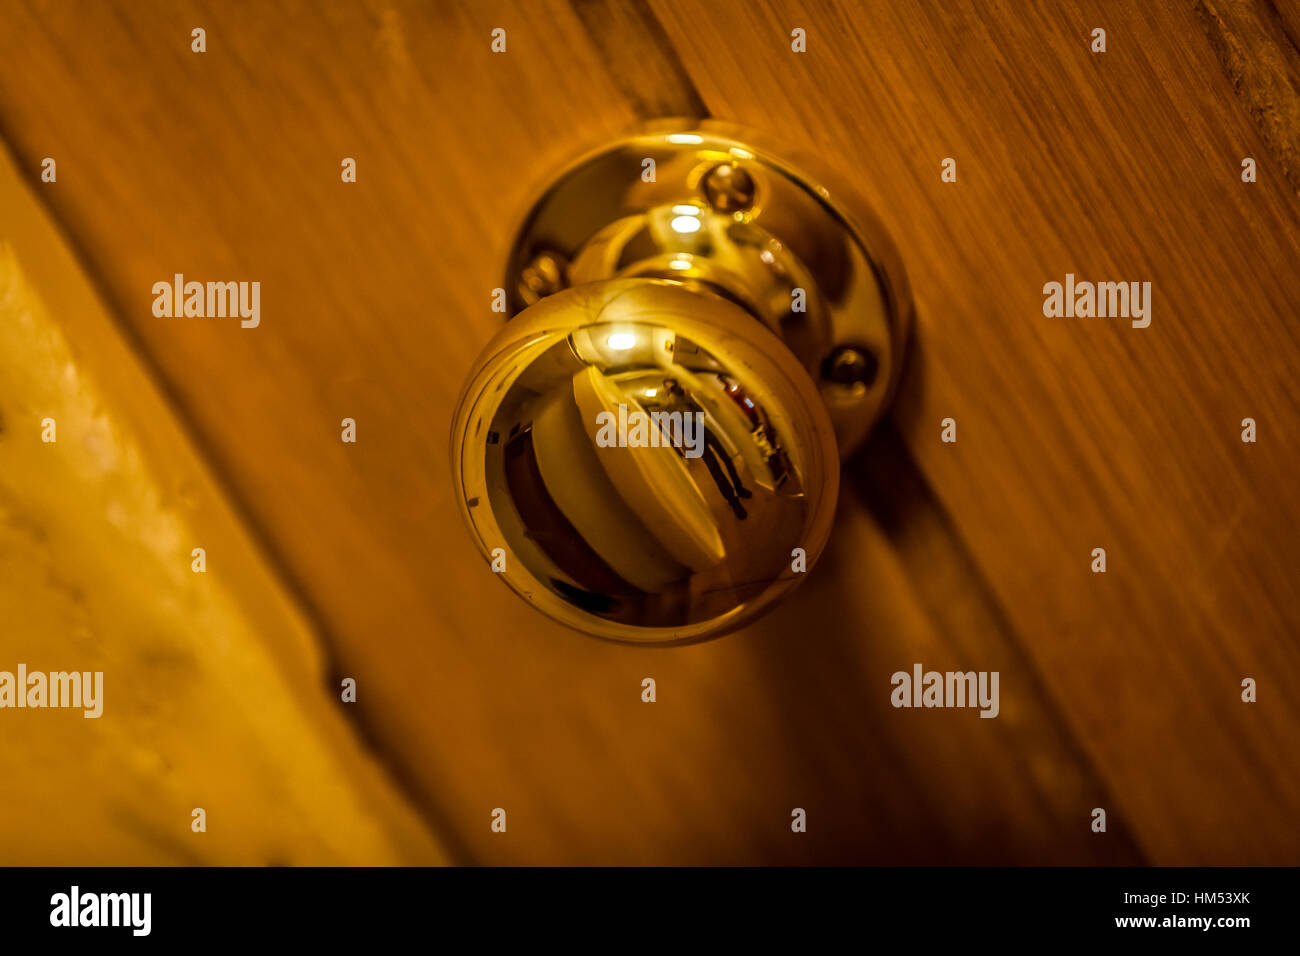 Golden door knob on wooden doors Stock Photo